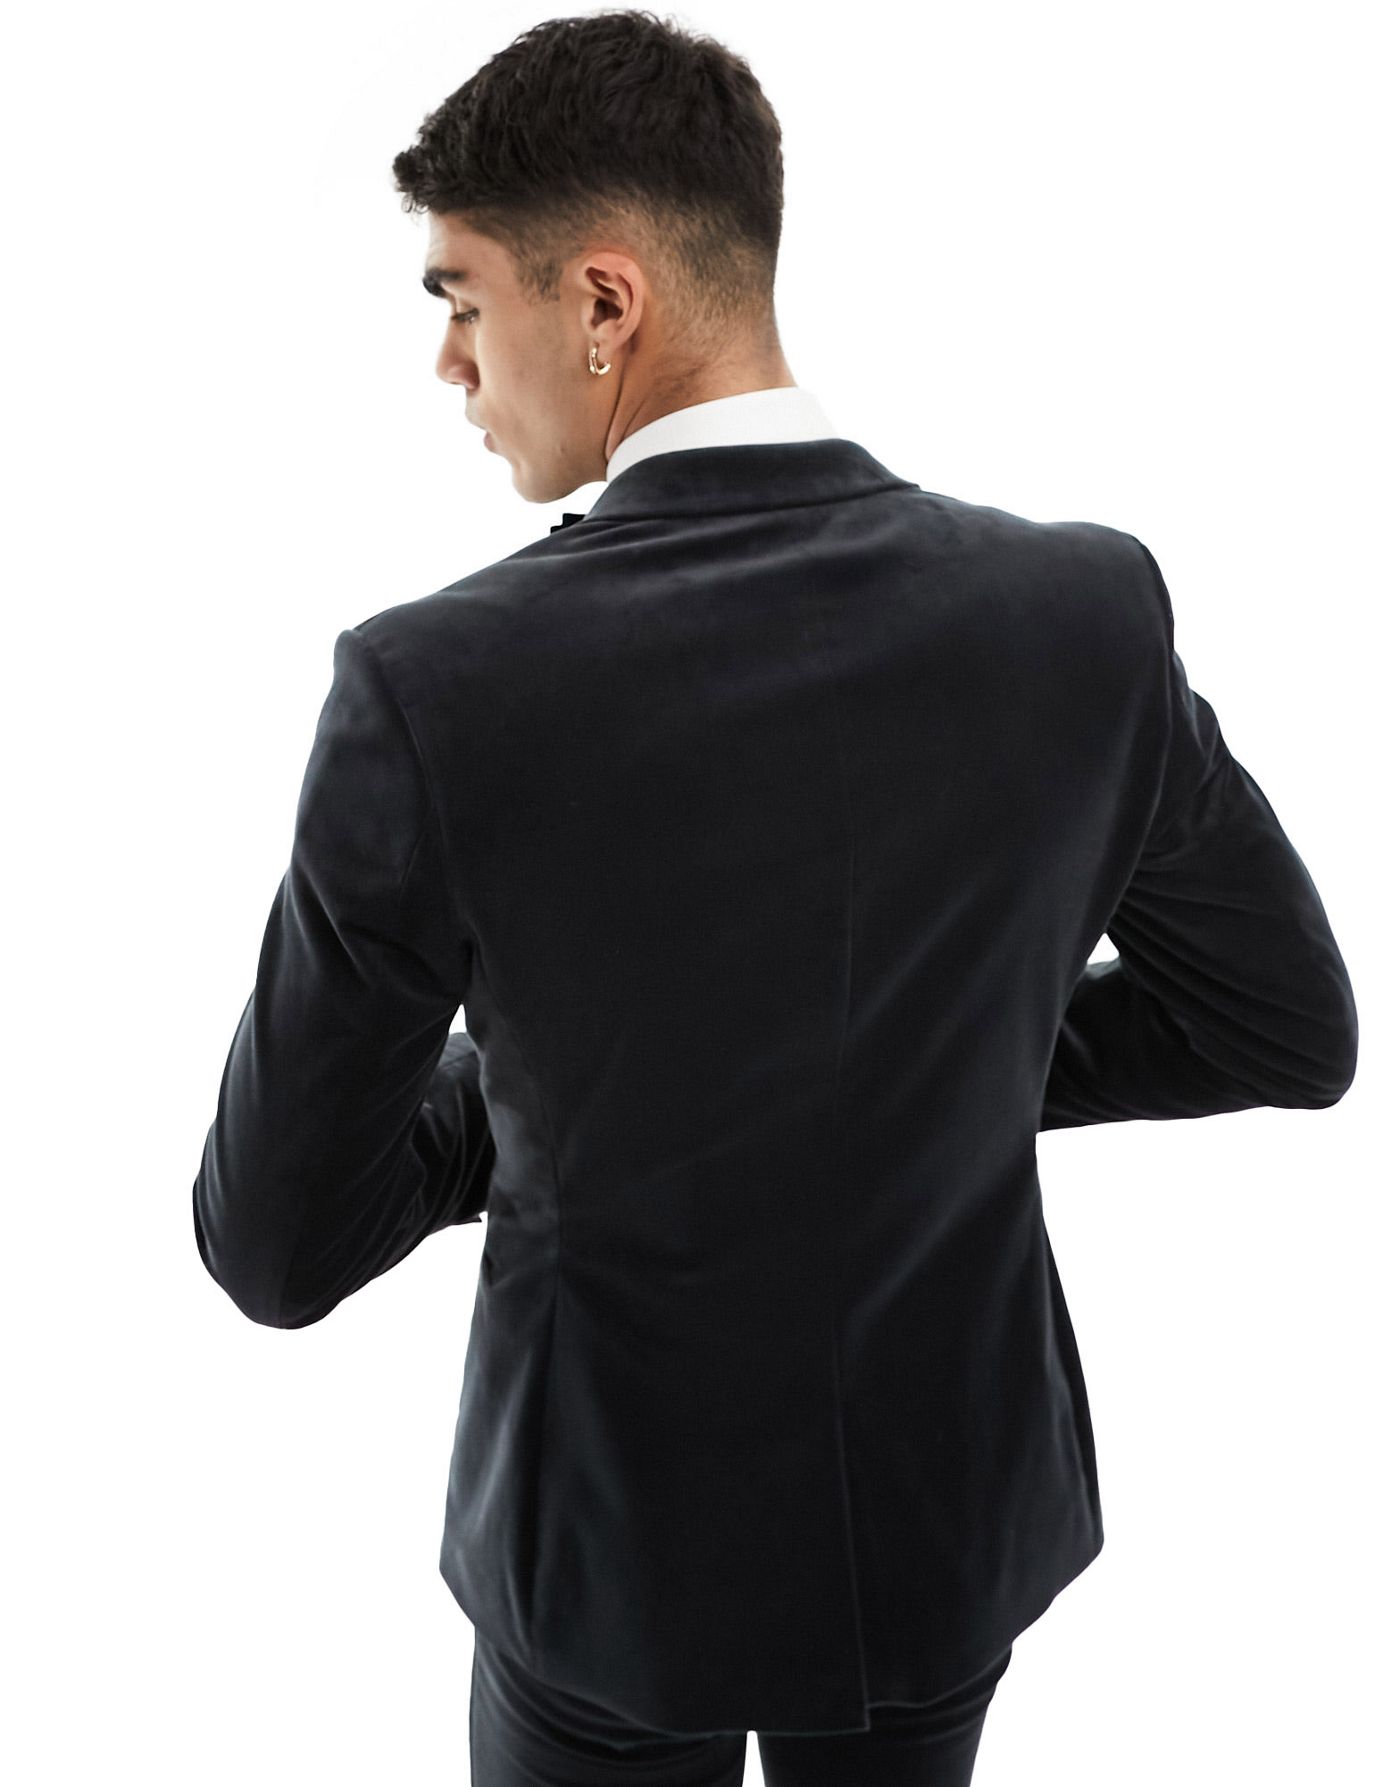 ASOS DESIGN skinny tuxedo suit jacket in black velvet